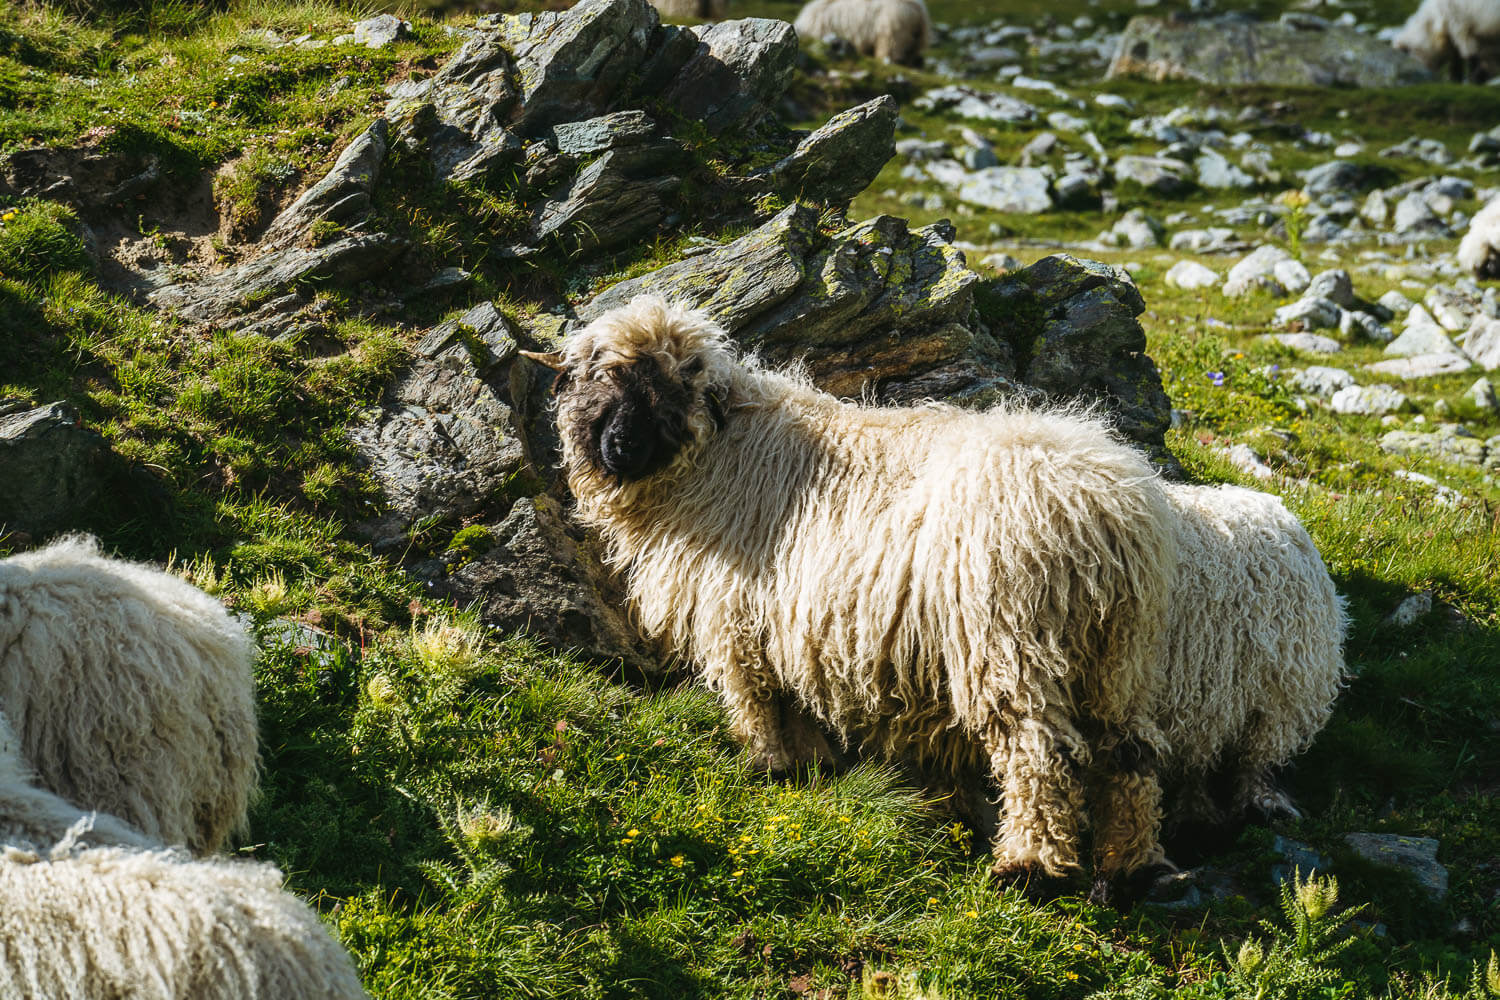 A Valais Blacknose sheep